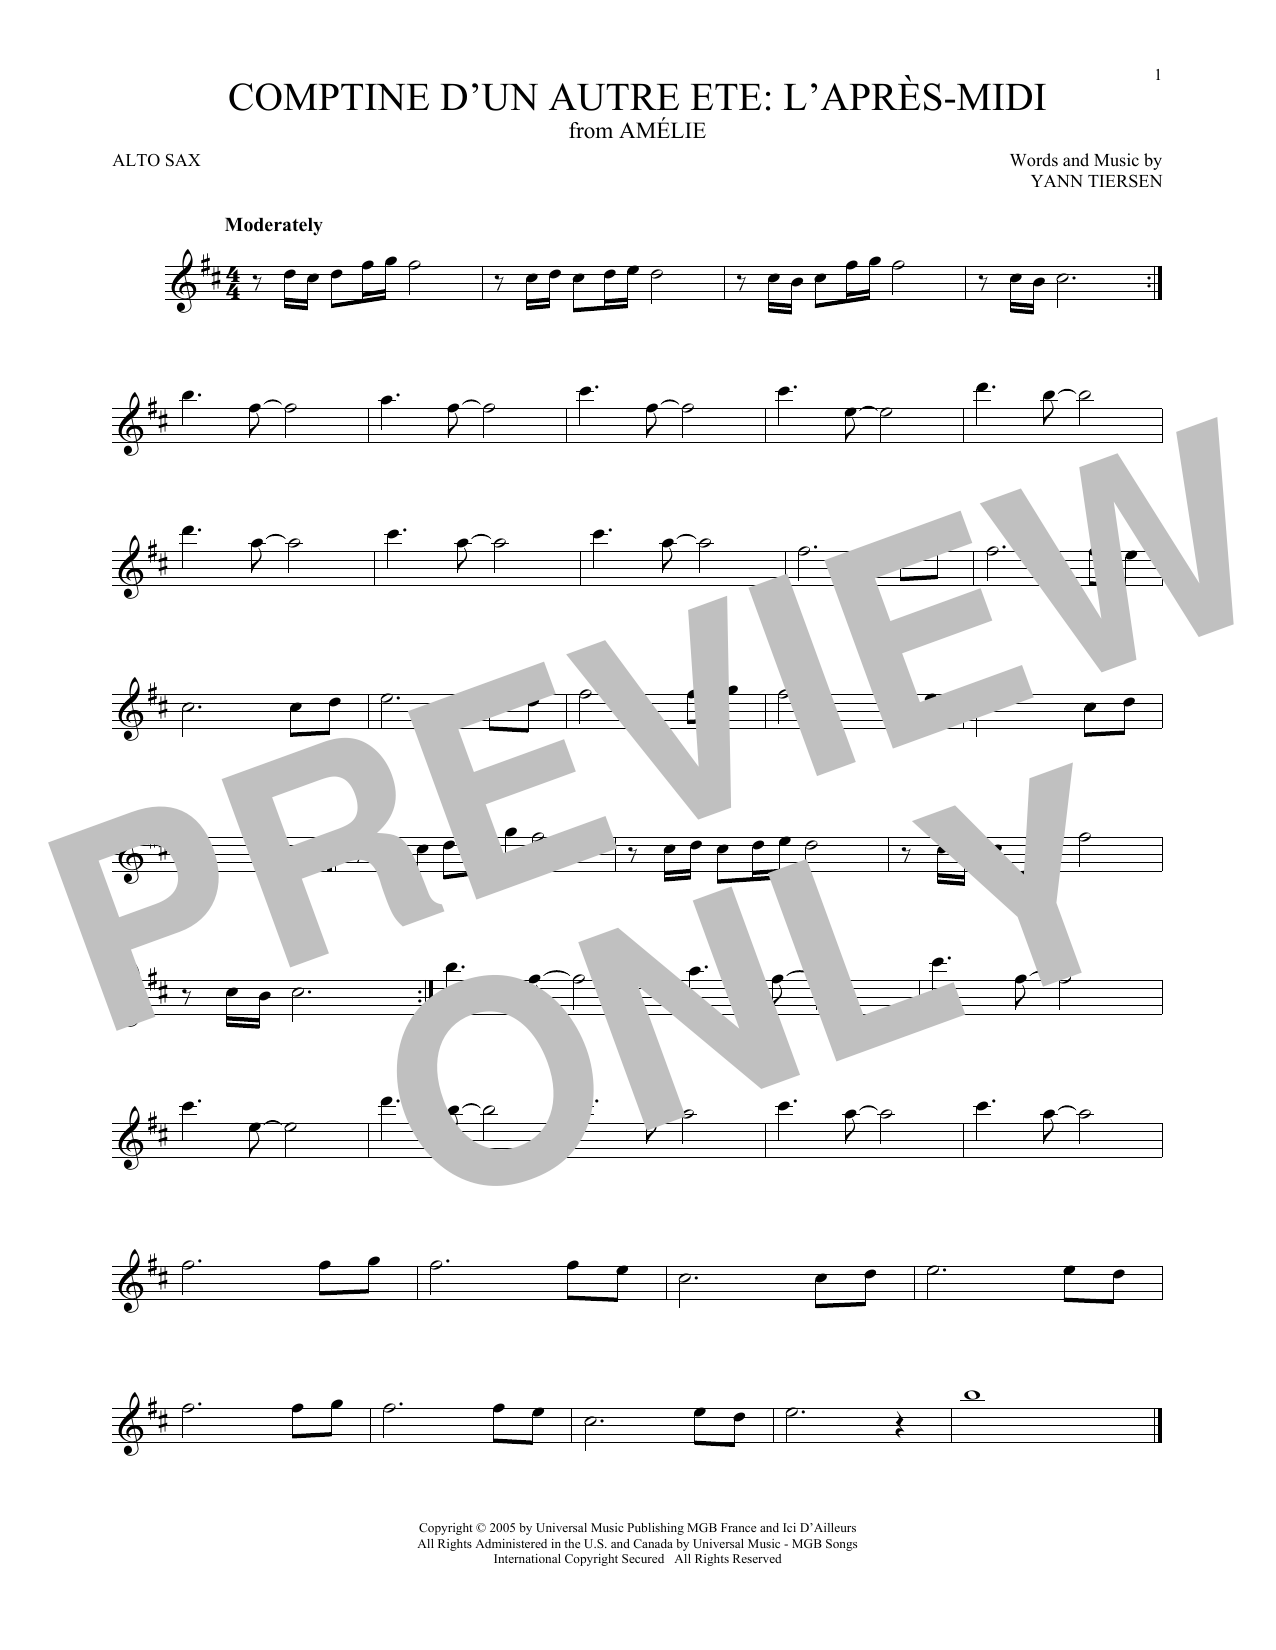 Download Yann Tiersen Comptine d'un autre été: L'après-midi (from Amelie) Sheet Music and learn how to play Viola Solo PDF digital score in minutes